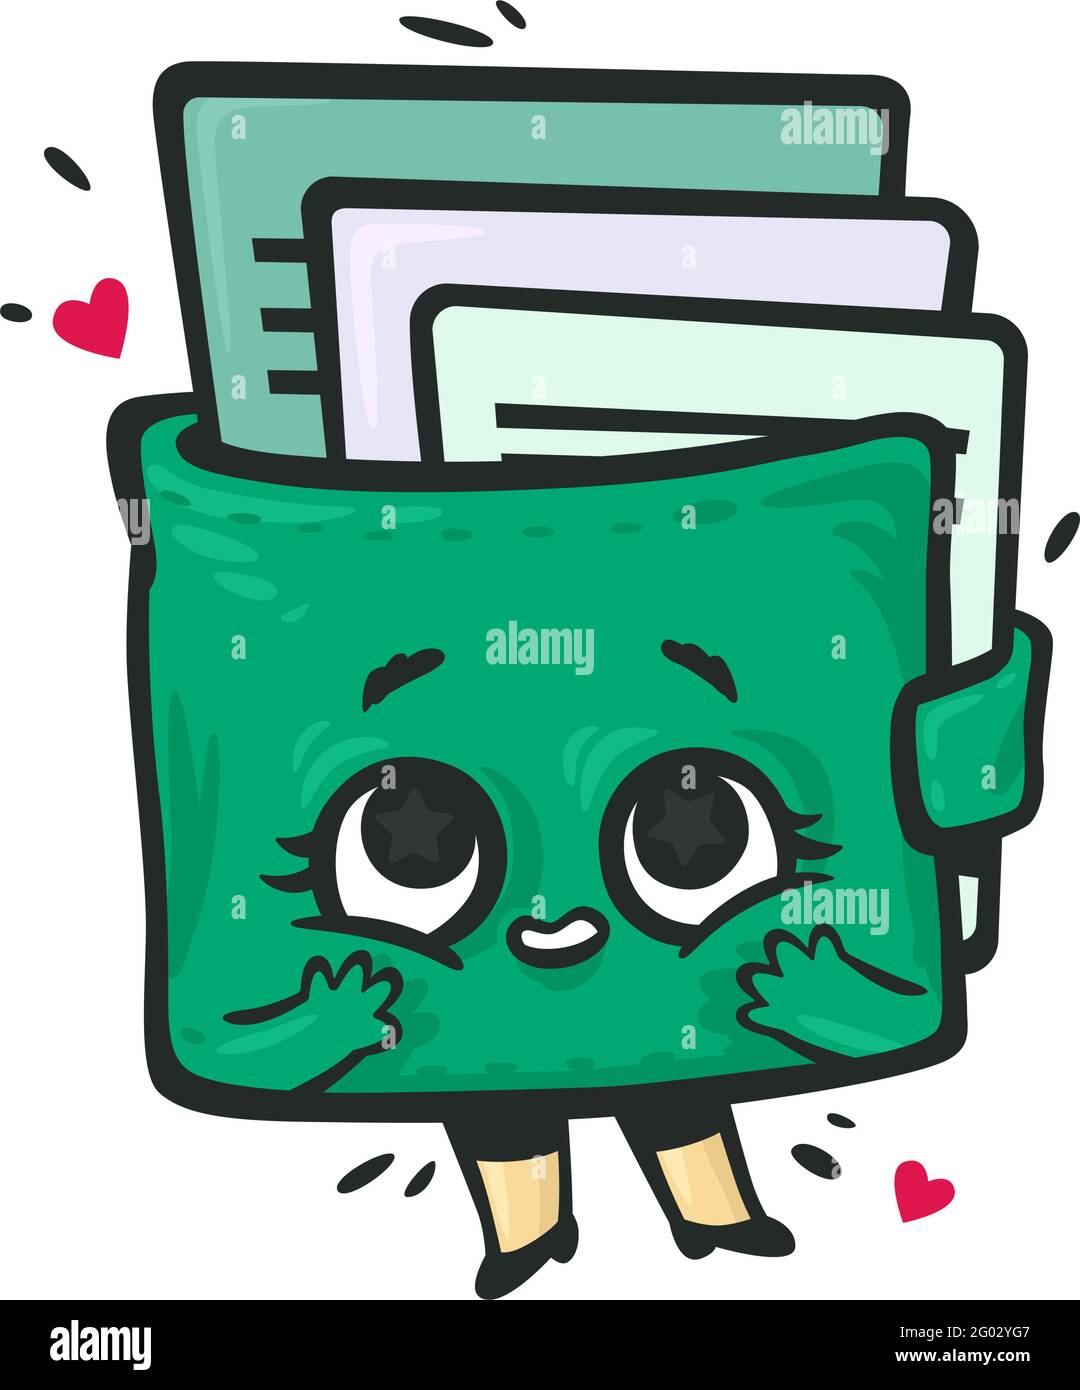 Geldbörse in Form eines Kawaii-Charakters mit Karten. Grüne Geldbörse mit  Augen, Armen und Beinen in Ehrfurcht vor dem Inhalt. Vektor. Illustration  für Investitionen Stock-Vektorgrafik - Alamy